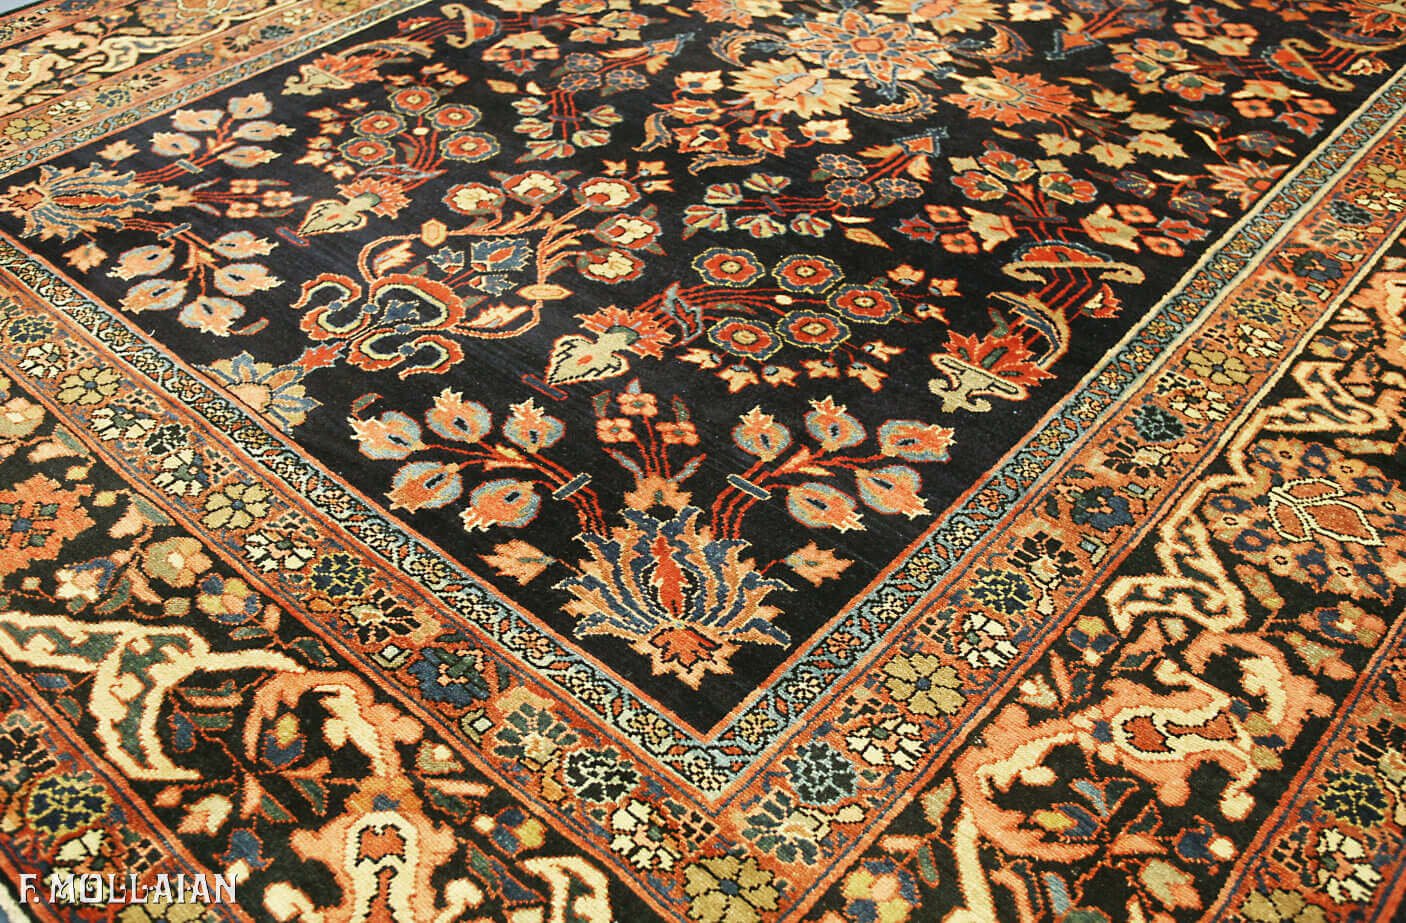 Antique Persian Hamedan Gallery Carpet n°:49370413